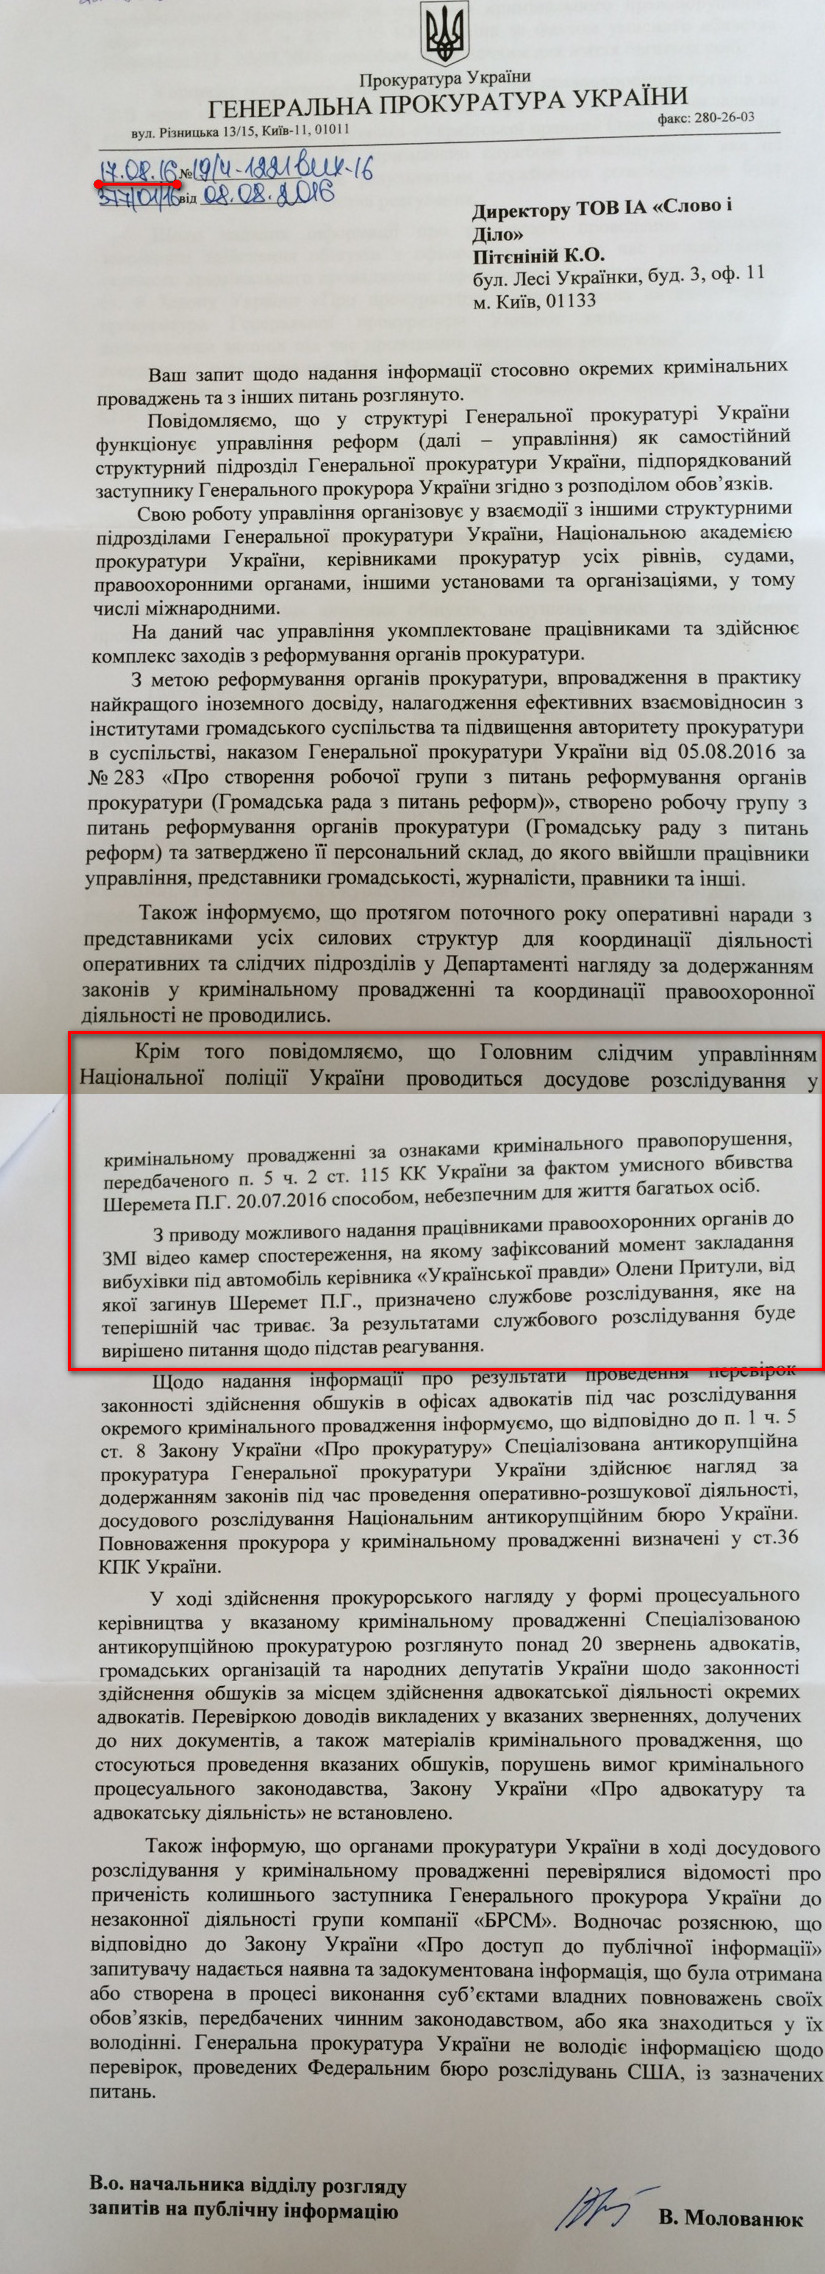 Лист в.о. начальника відділу розгляду запитів на публічну інформацію Генеральної прокуратури України Молованюка В. від 17 серпня 2016 року